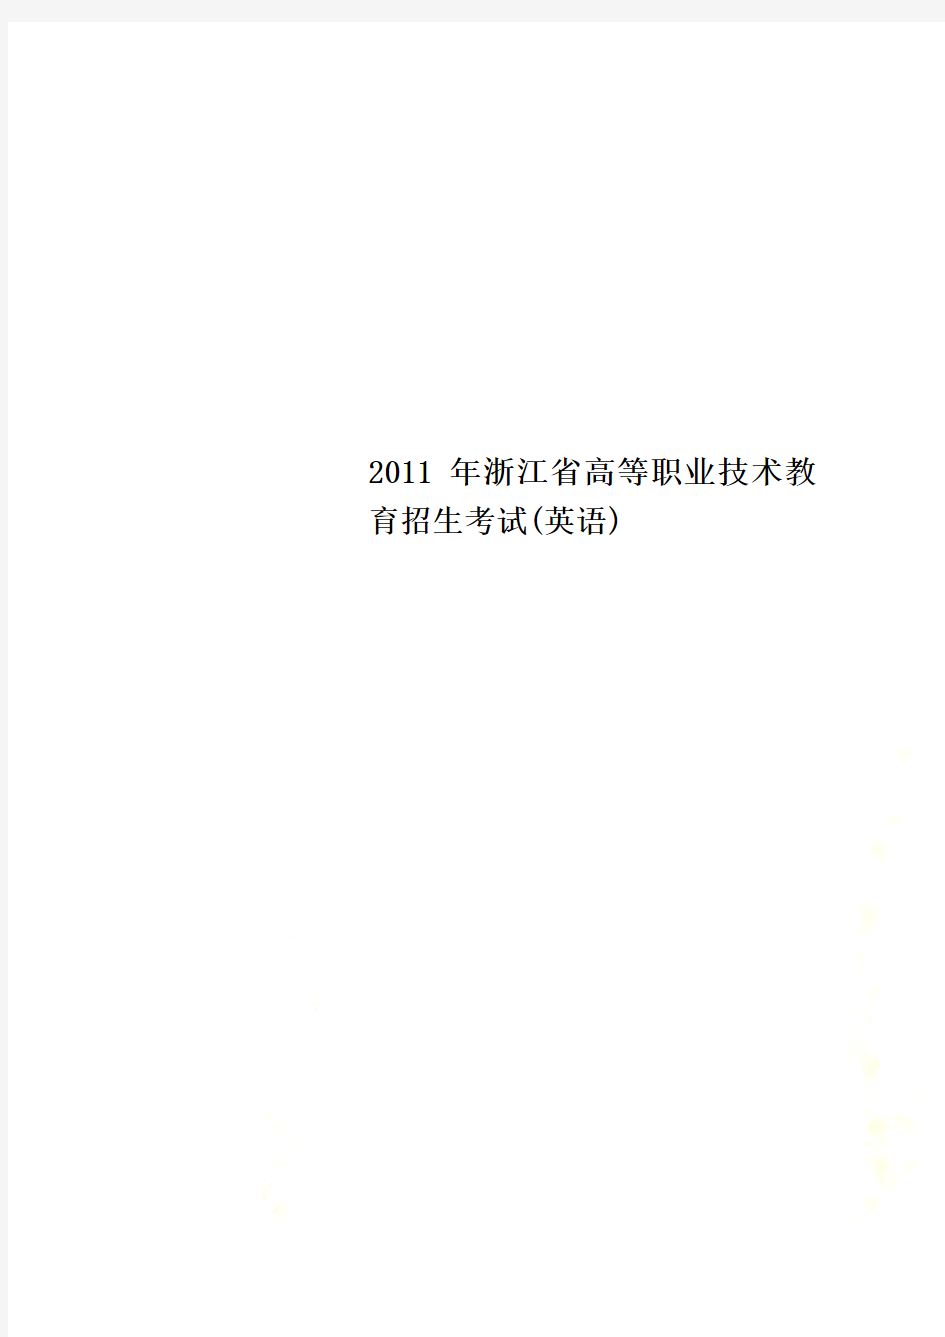 2011年浙江省高等职业技术教育招生考试(英语)